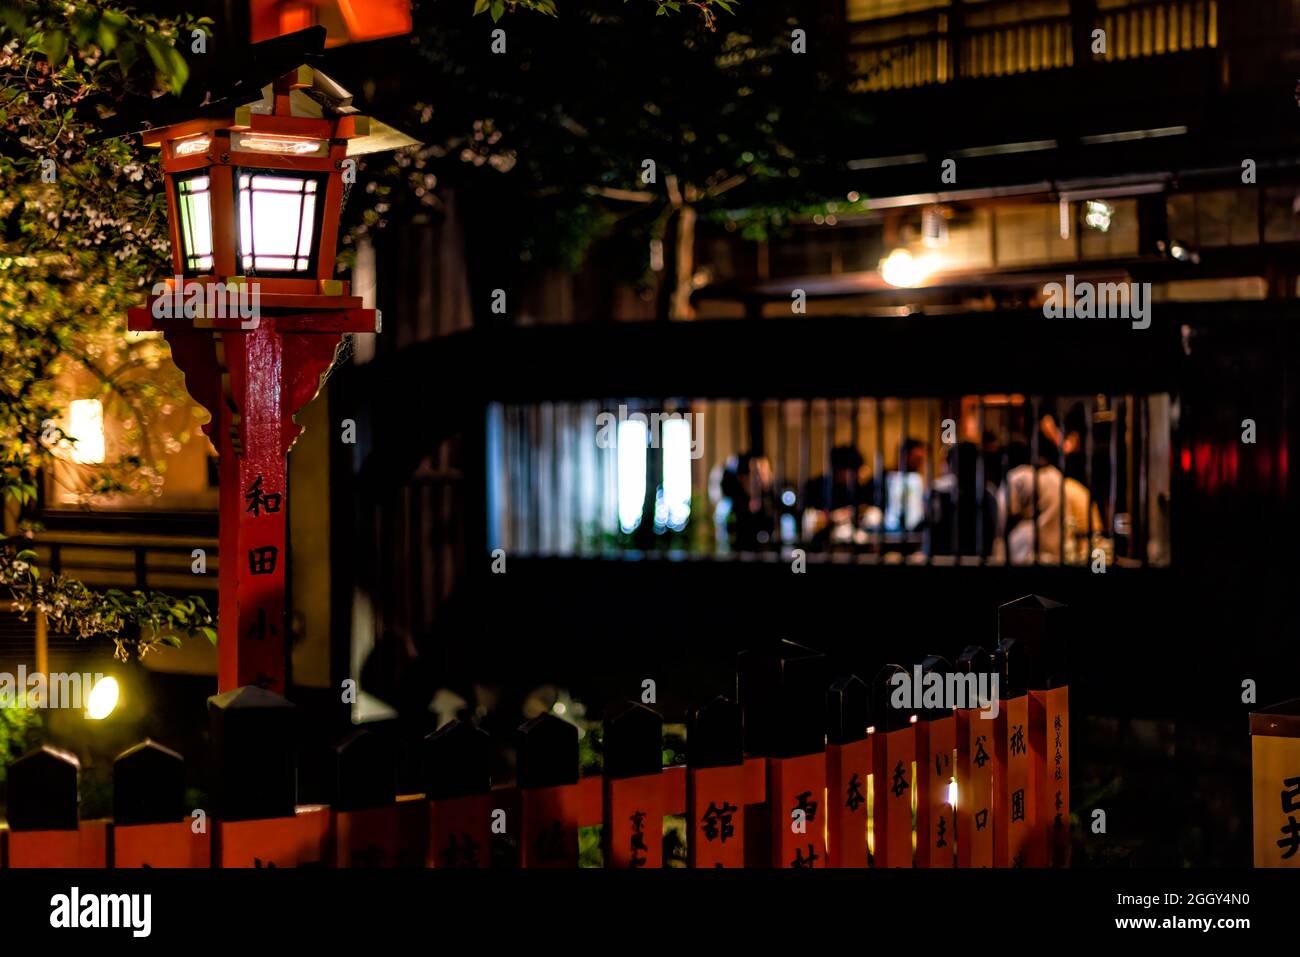 Kyoto, Japan - 16. April 2019: Gion-Viertel mit Kirschbäumen im Gartenpark und roter Laterne in der Nacht am Fluss und Hintergrund eines gehobenen Restaurants Stockfoto